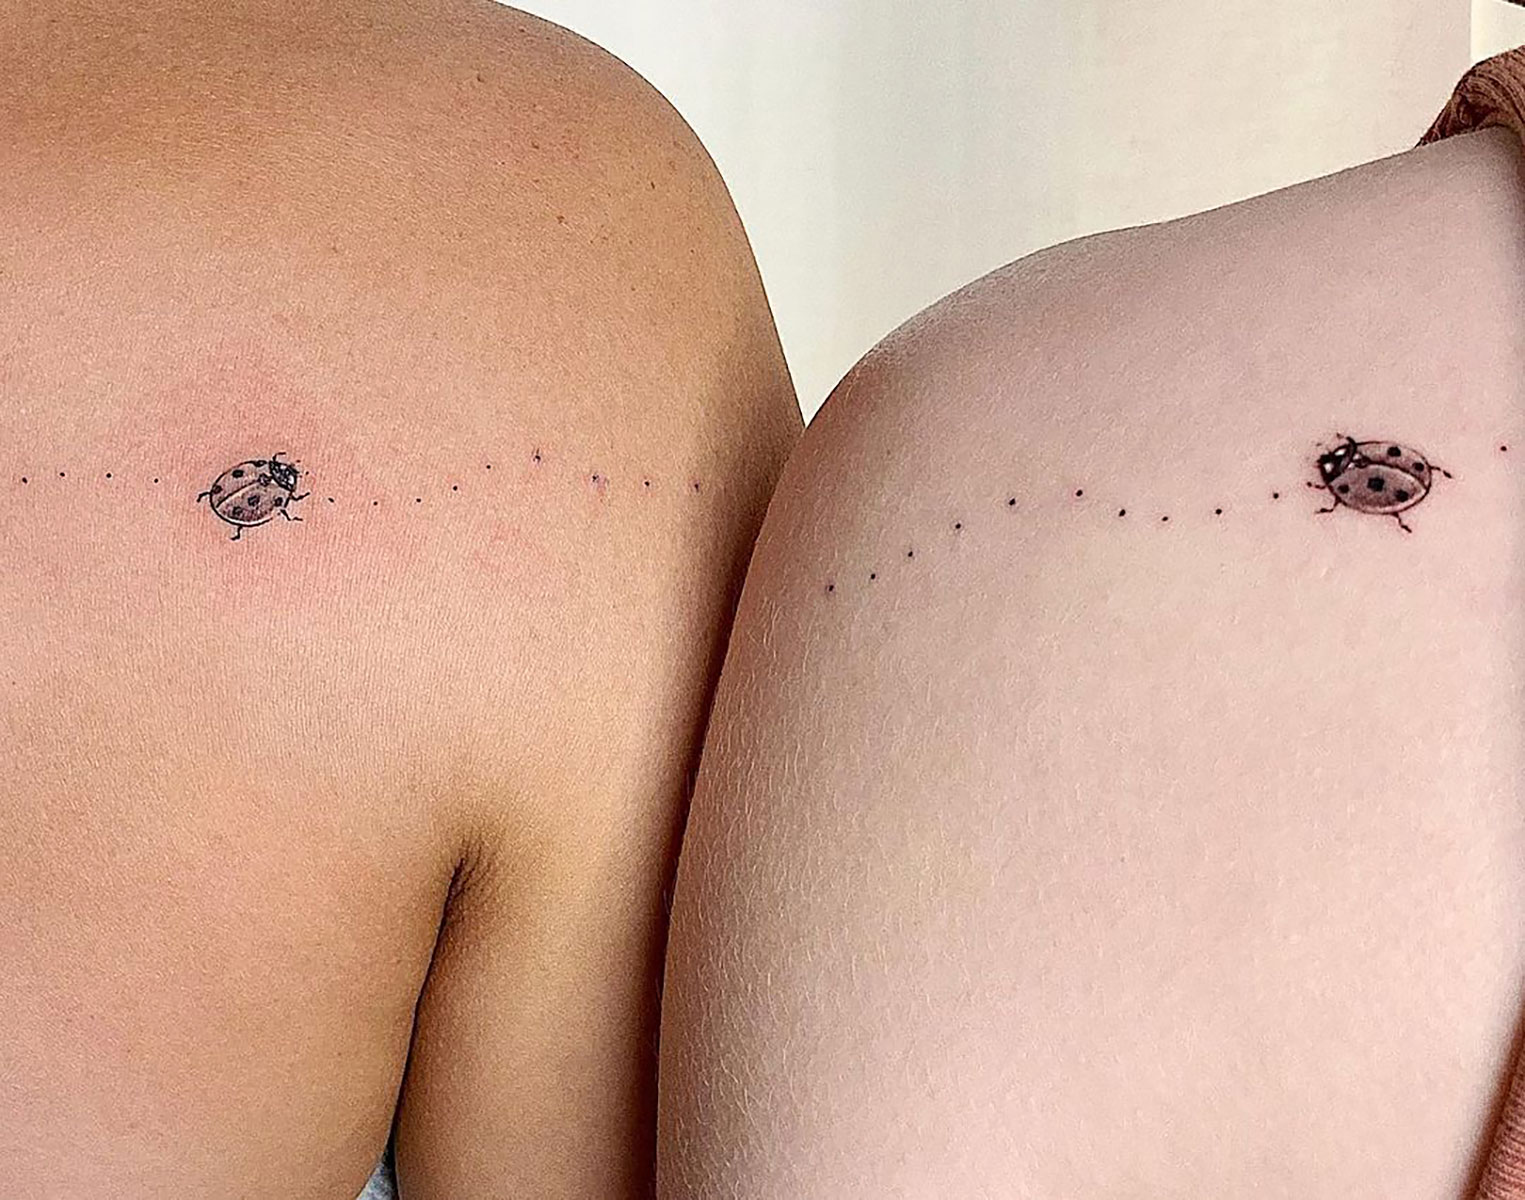 41 Beautiful Ladybug Tattoos Ideas